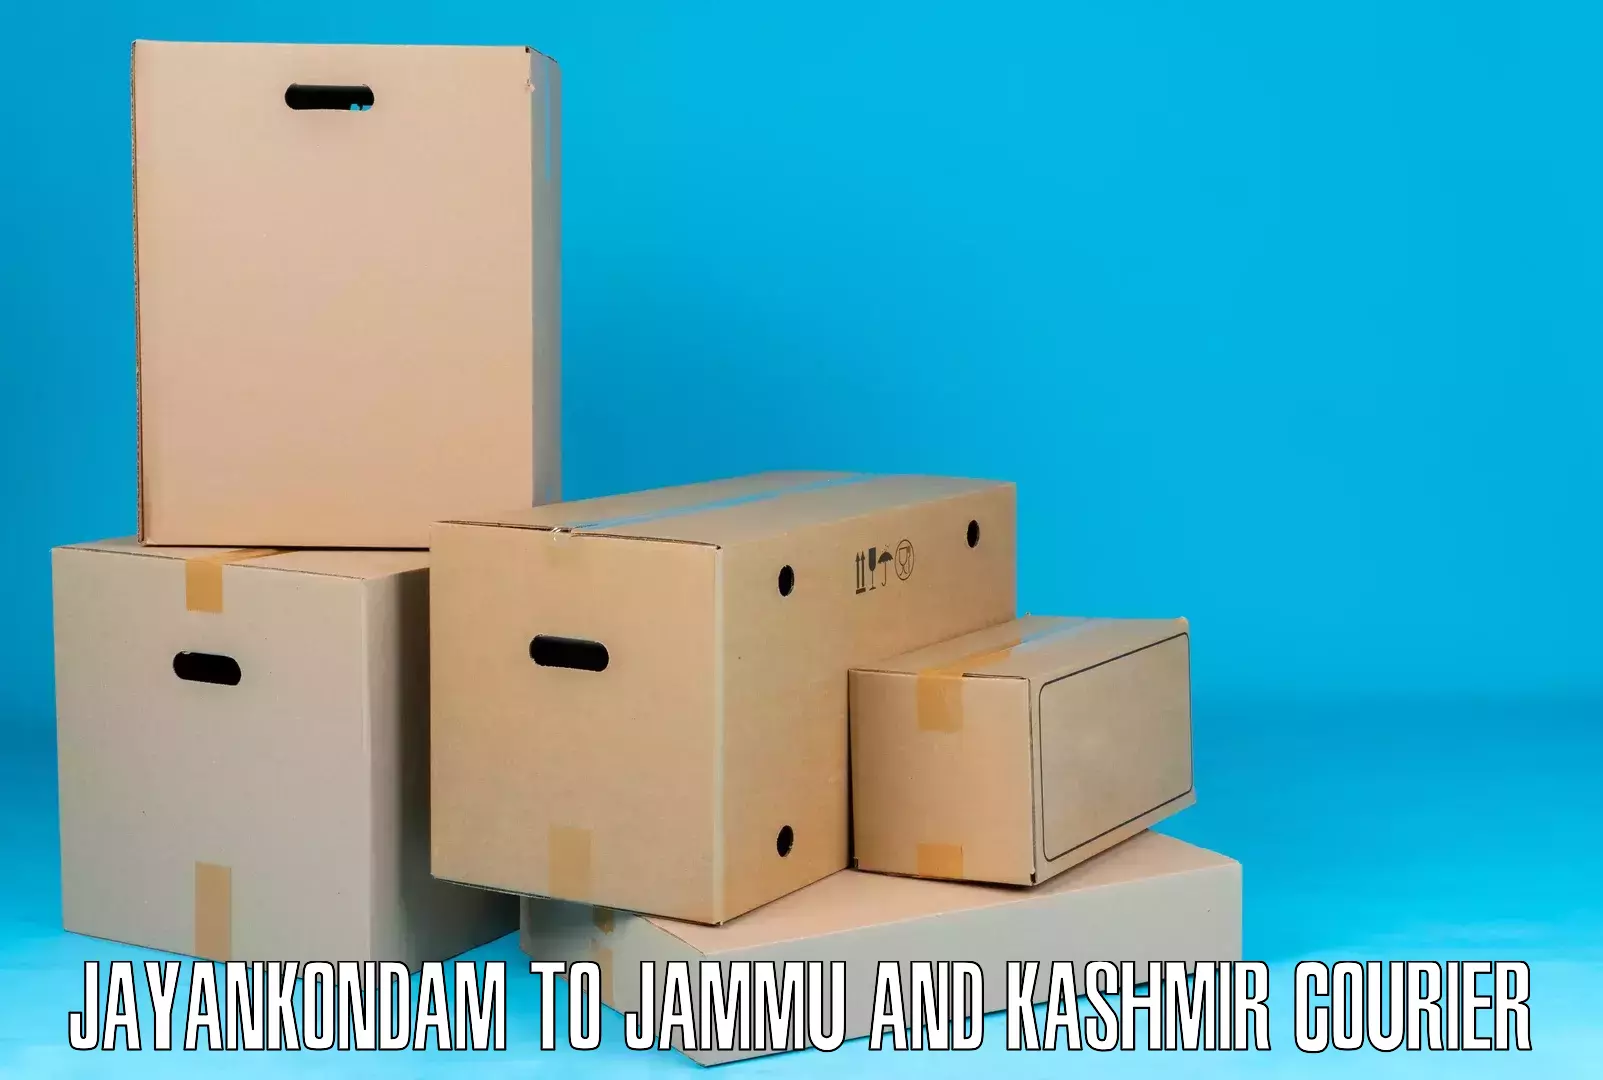 Express courier capabilities Jayankondam to Jammu and Kashmir